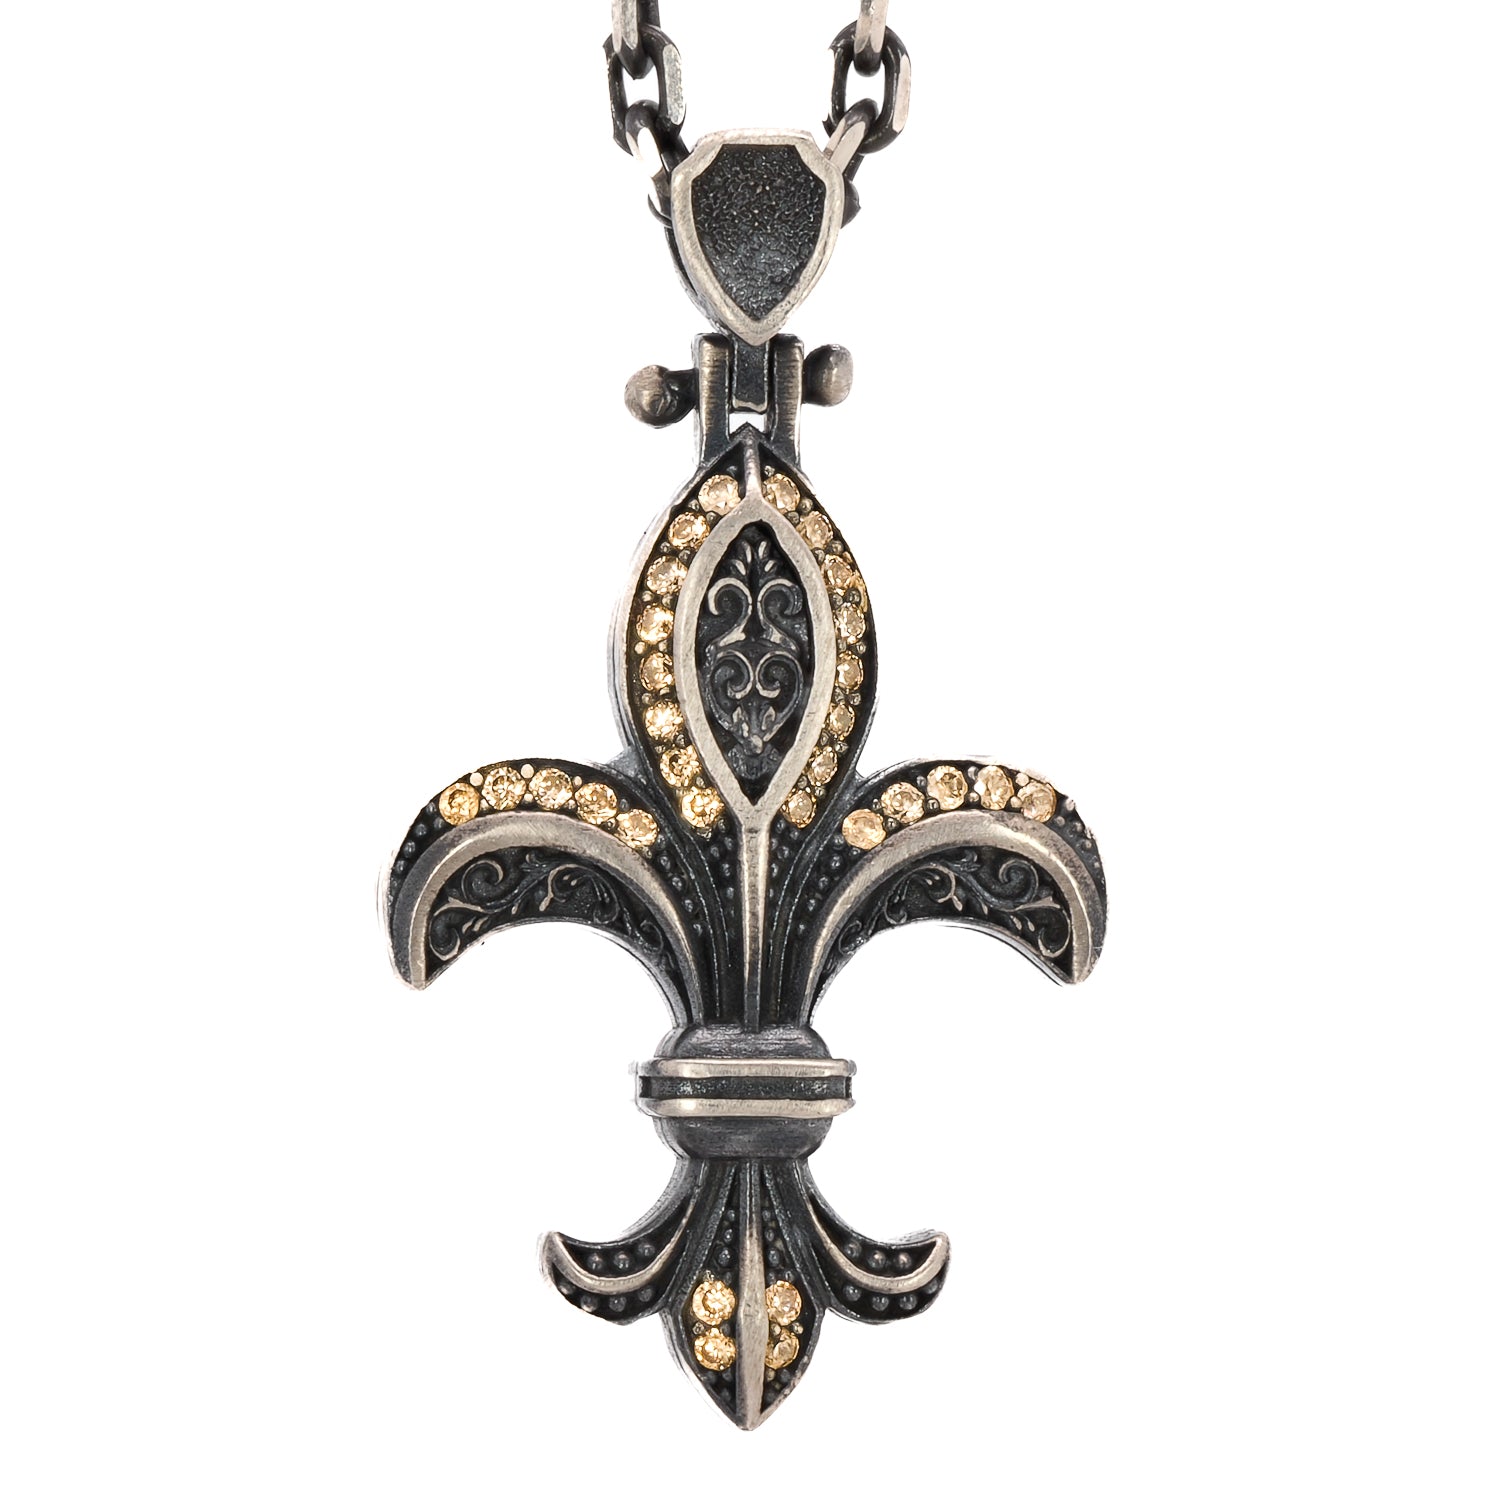 Embrace the historical significance of the Fleur de Lis symbol with the Unique Designer Fleur de Lis Necklace, a unique and meaningful accessory.